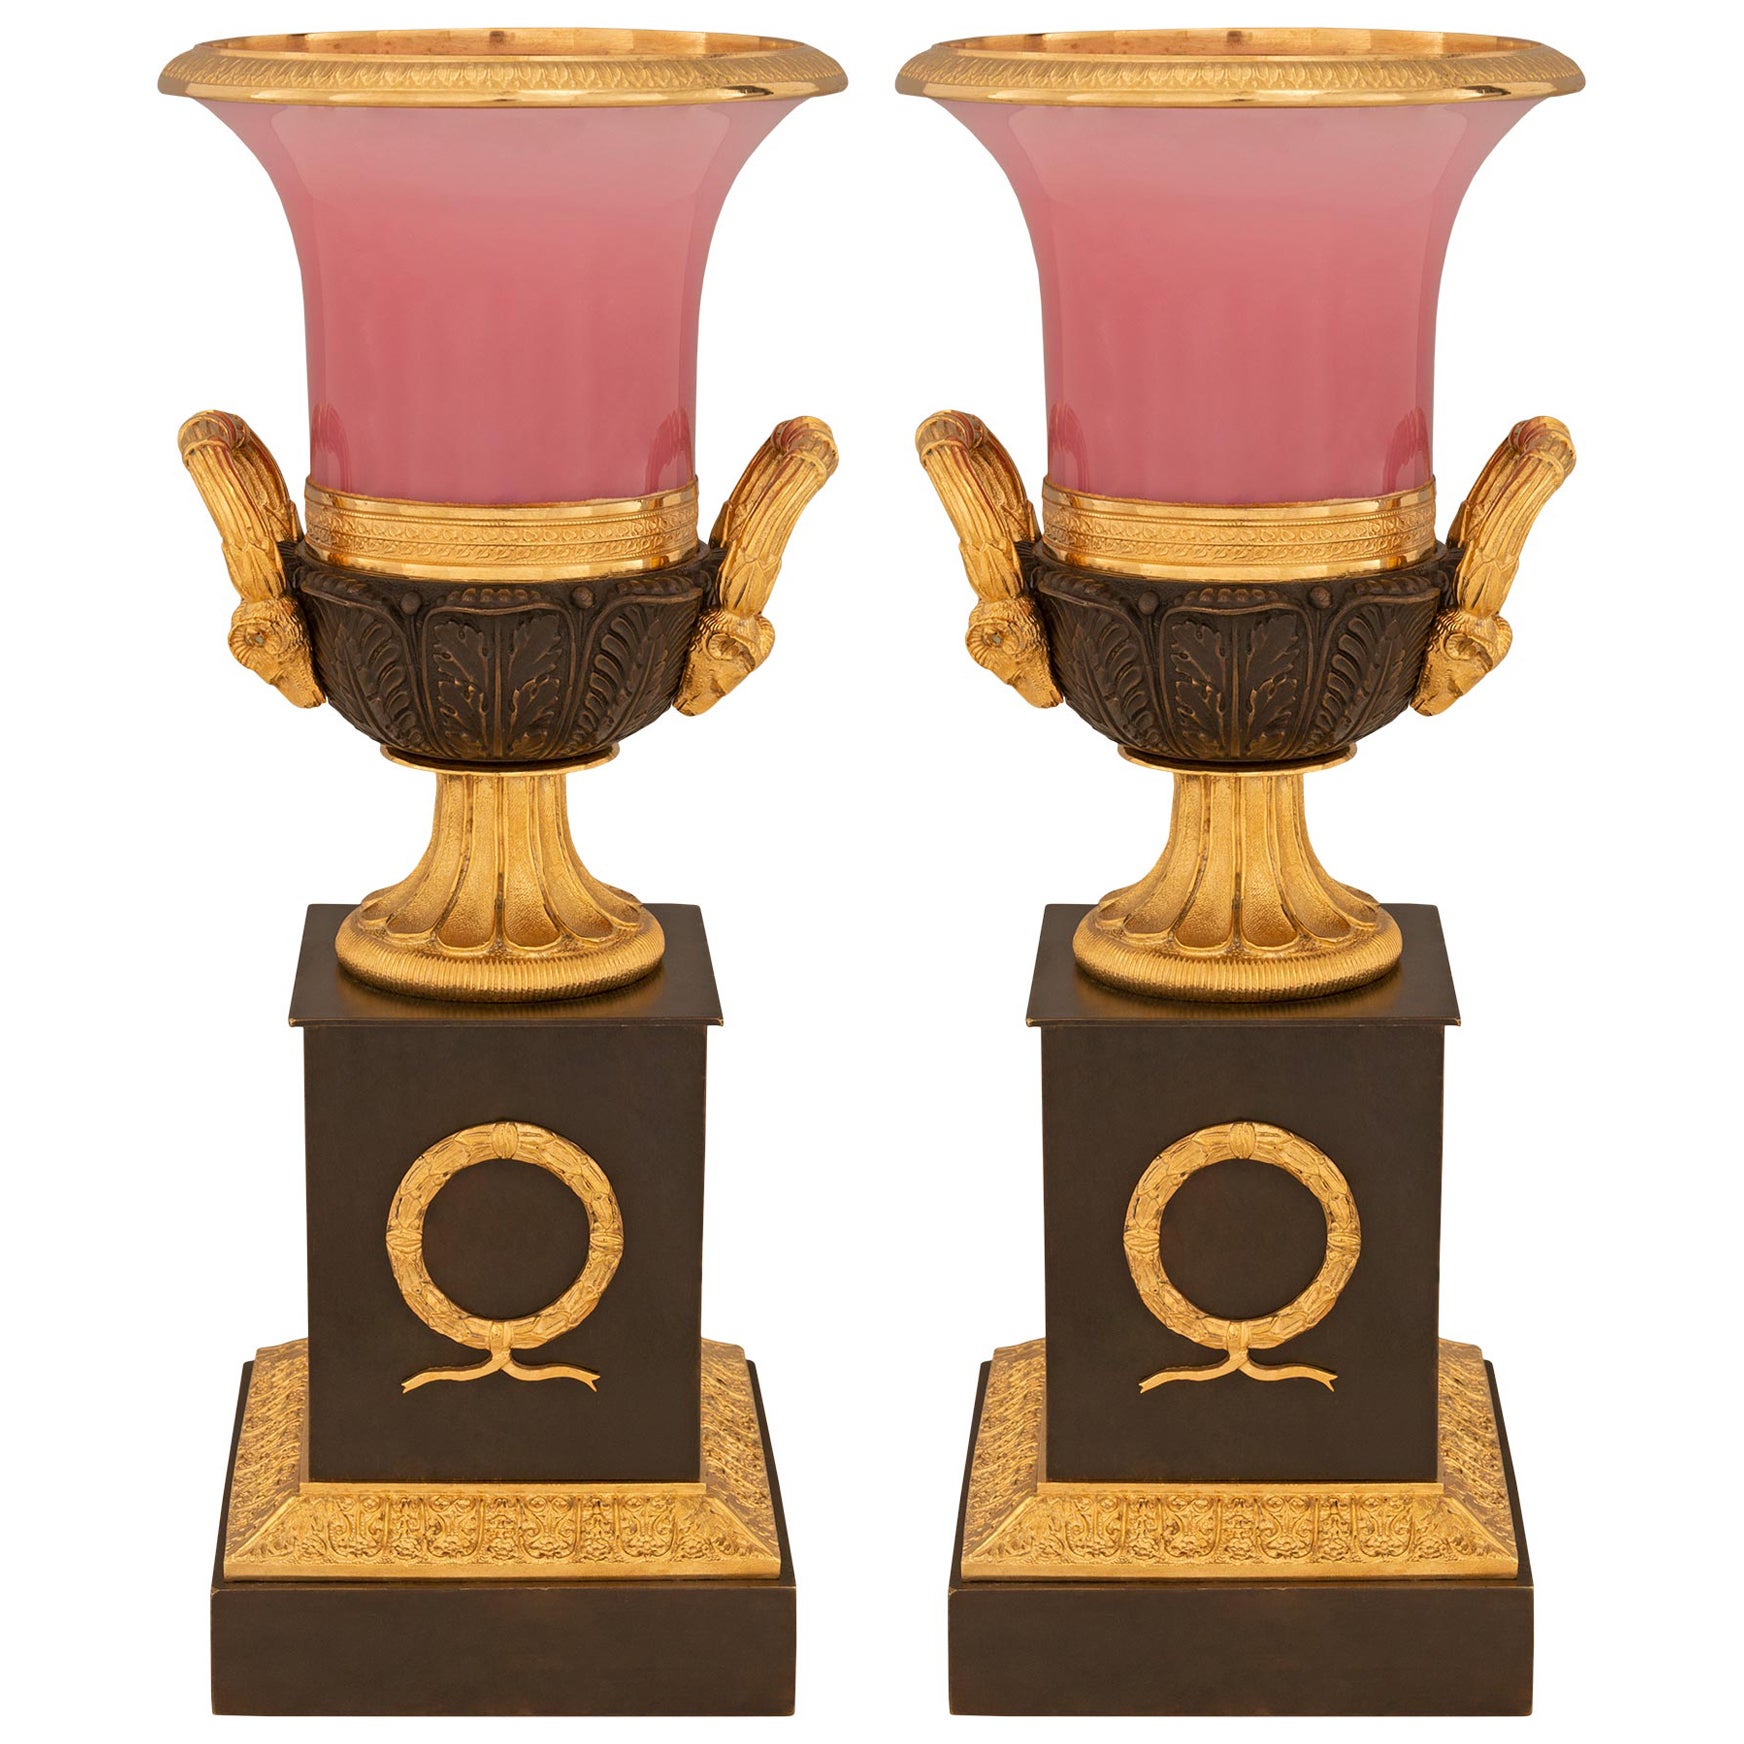 Paire d'urnes néoclassiques françaises du 19ème siècle en bronze, verre et bronze doré